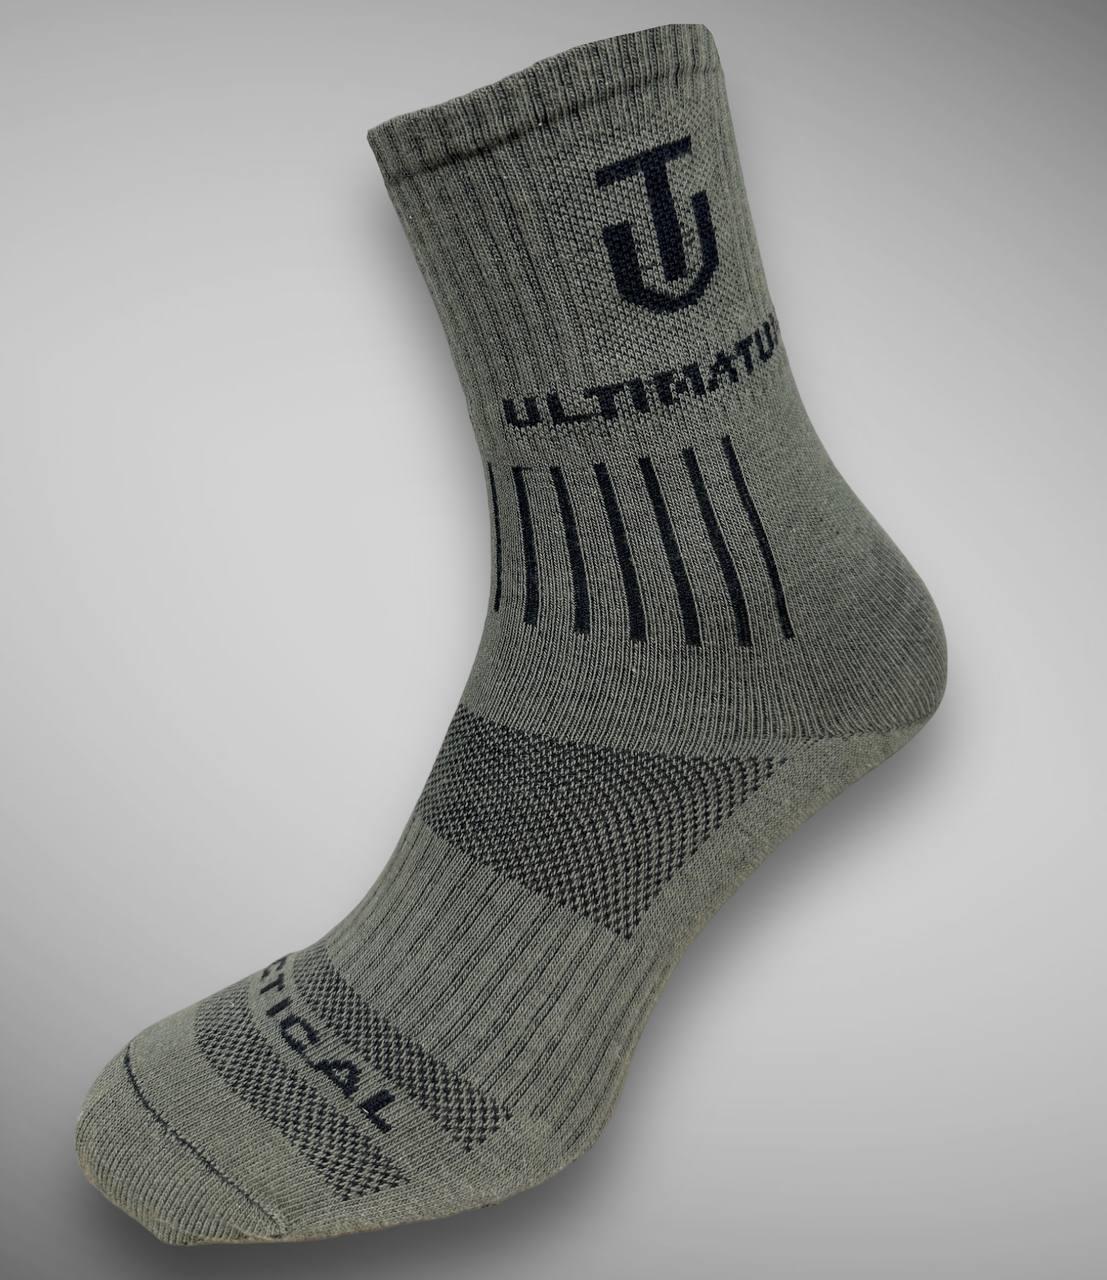 Шкарпетки ULTIMATUM Tactical високі Олива, трекінгові літні чоловічі шкарпетки під берци 39-42